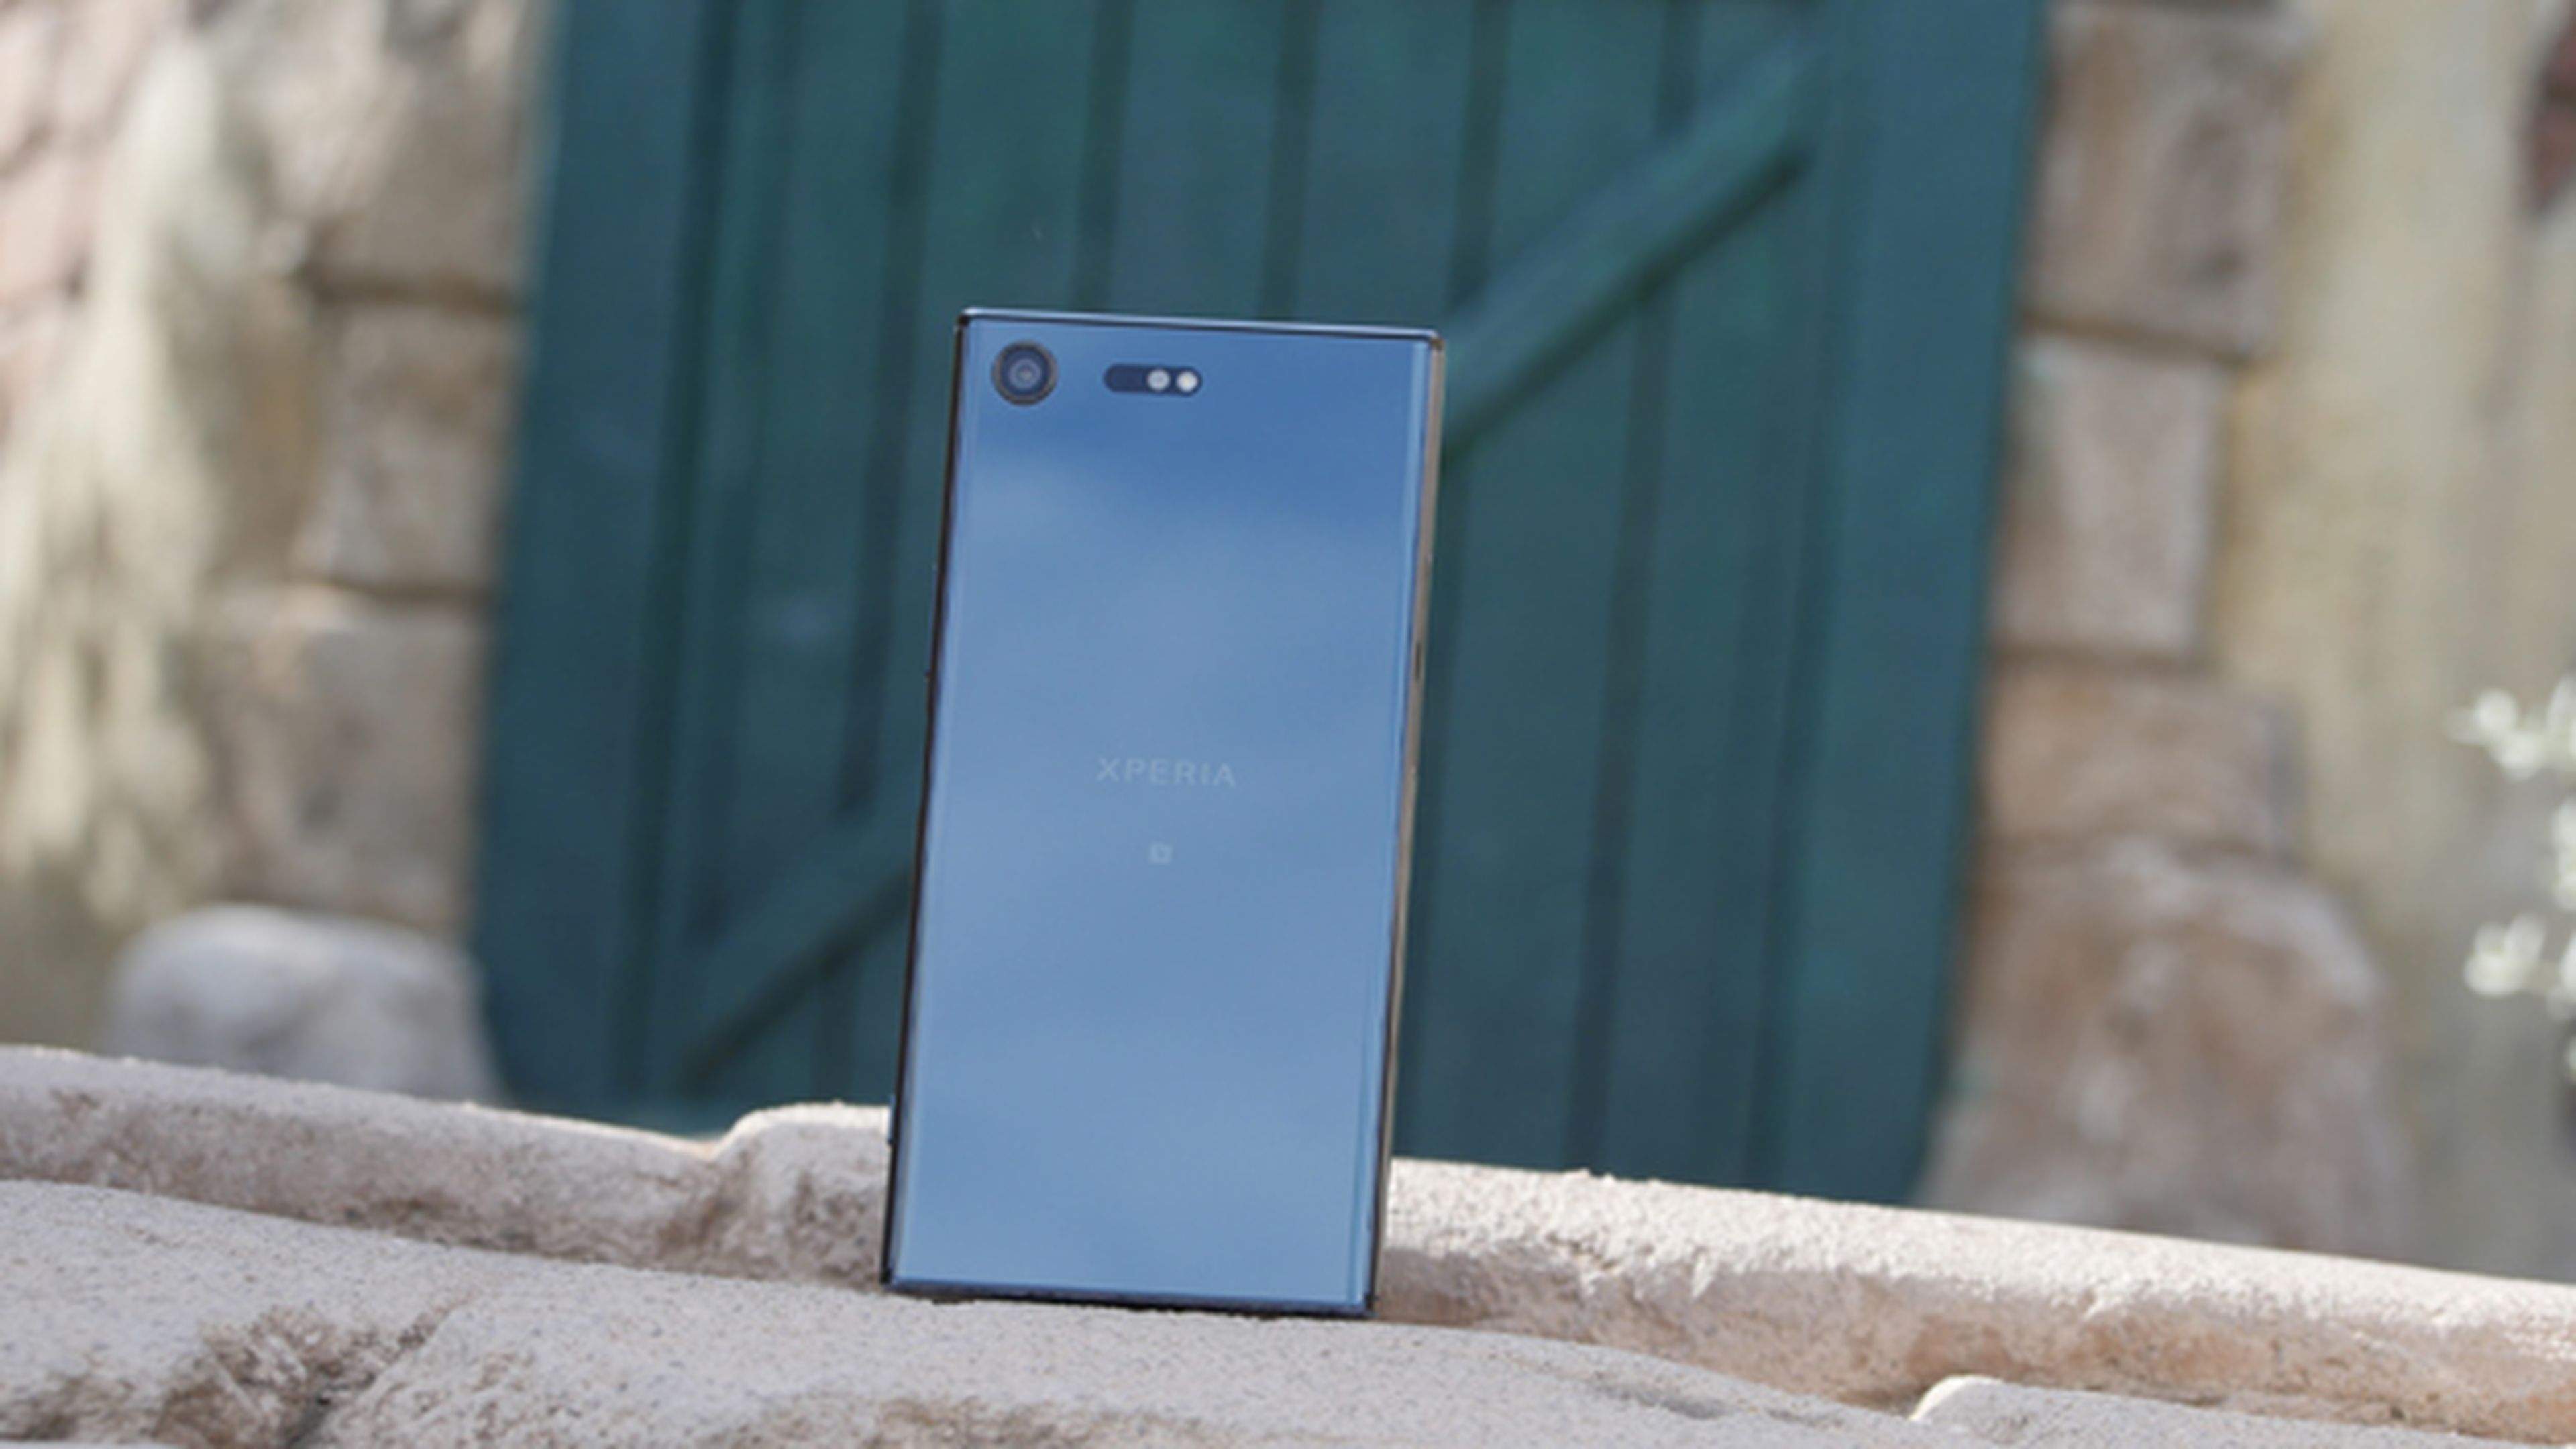 El efecto cristal espejo de la carcasa trasera del Sony Xperia XZ Premium